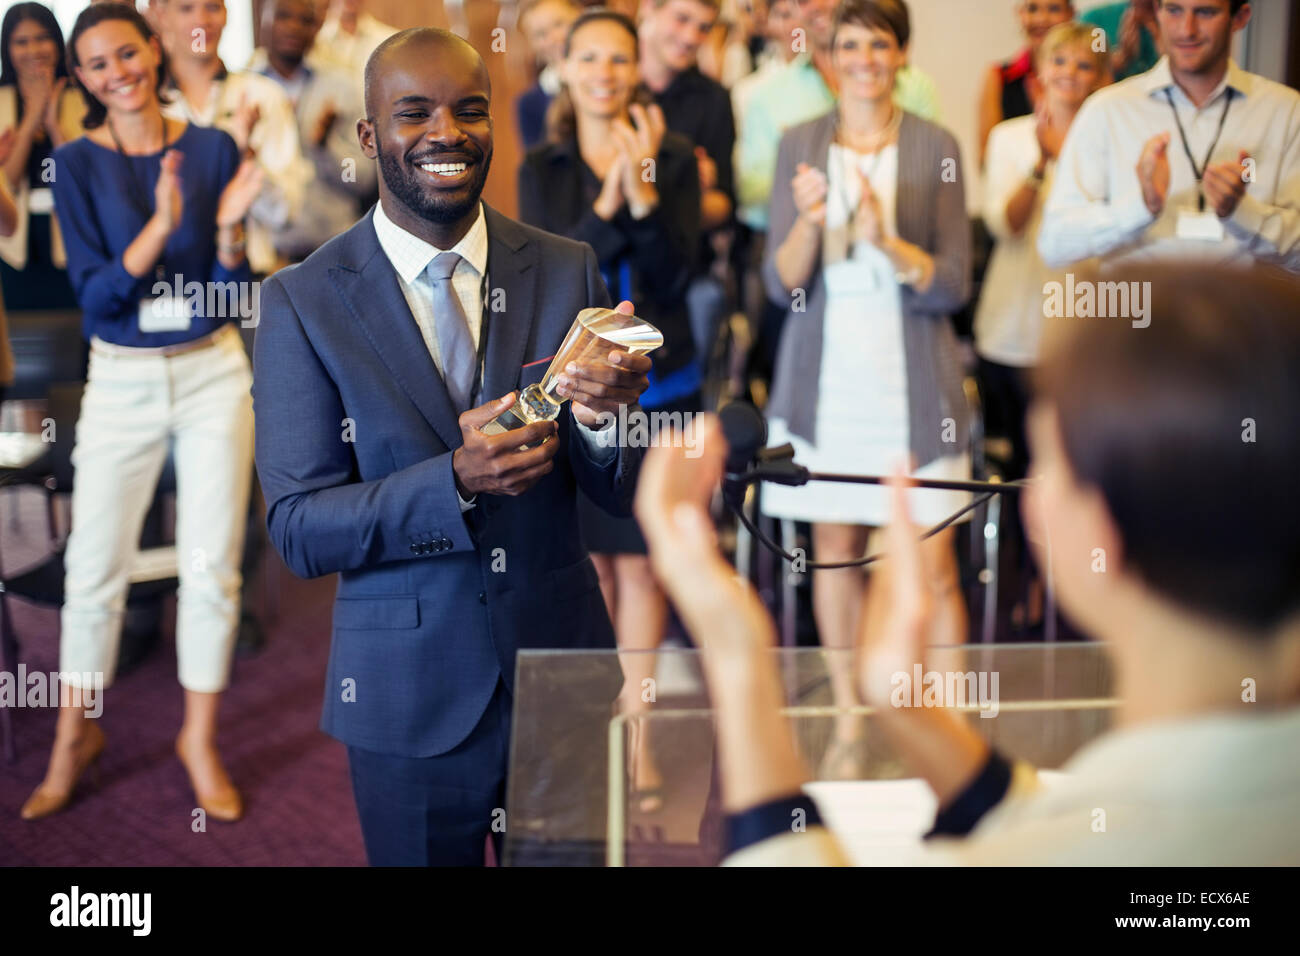 Porträt des jungen Mann, der Trophäe, stehend im Konferenzraum, hält lächelnd zu applaudierenden Publikum Stockfoto